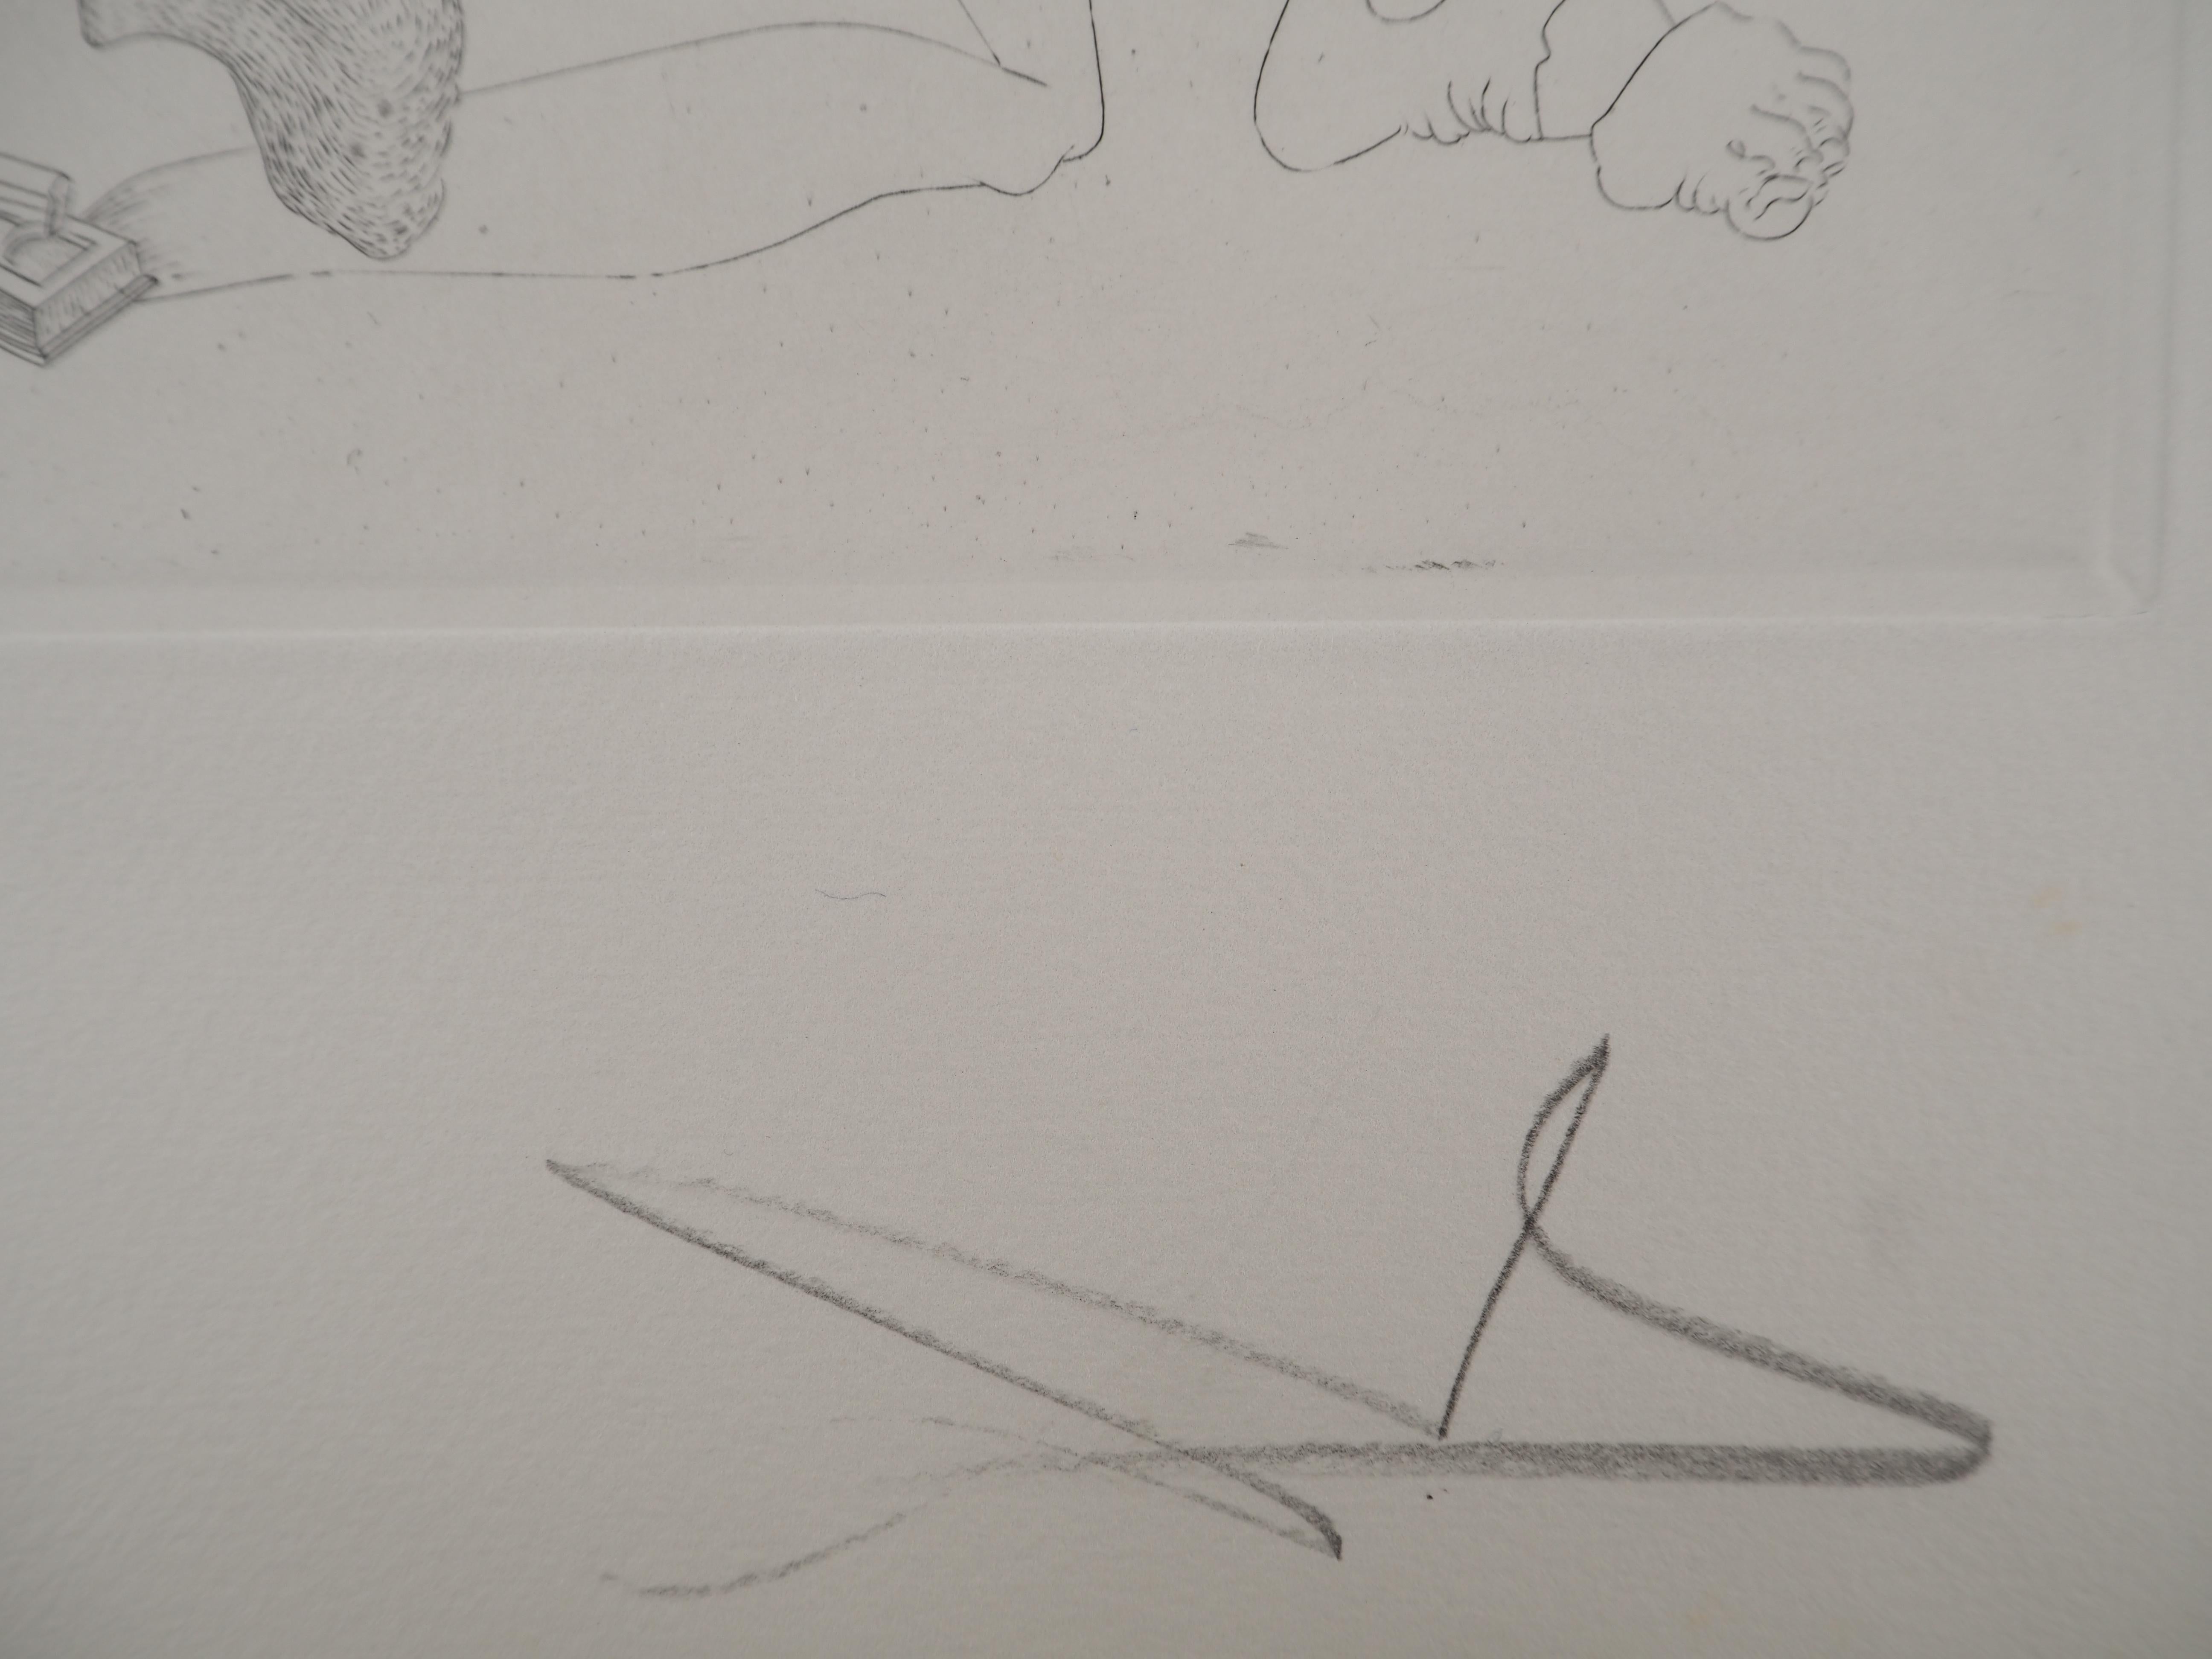 Salvador Dali
Le combat, 1975

Gravure originale 
Signé au crayon 
Limité à 100 exemplaires (Ici numéroté 52)
Sur vélin d'Arches  32.5 x 25 cm (c. 12.7 x 9.8 in)

REFERENCES :
- Catalogue raisonne Field #34-2
- Catalogue raisonné Michler & Lopsinger